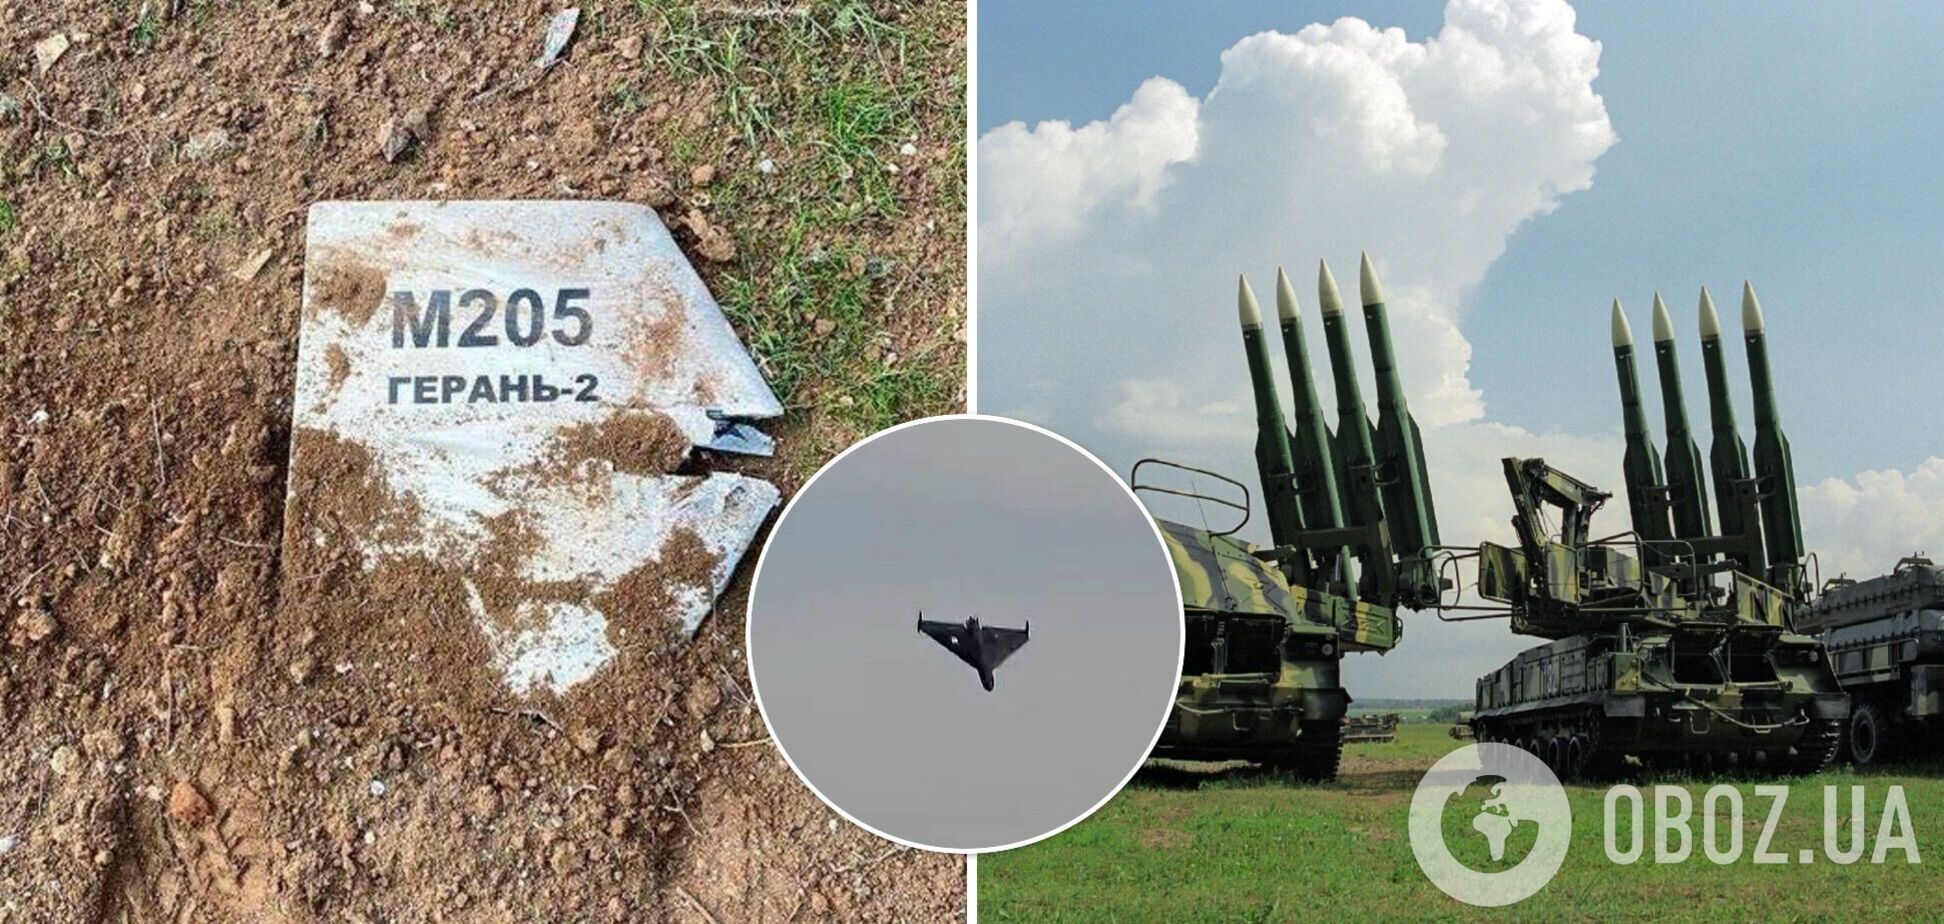 Украинские защитники за два часа уничтожили 19 дронов Shahed-136 и одну ракету